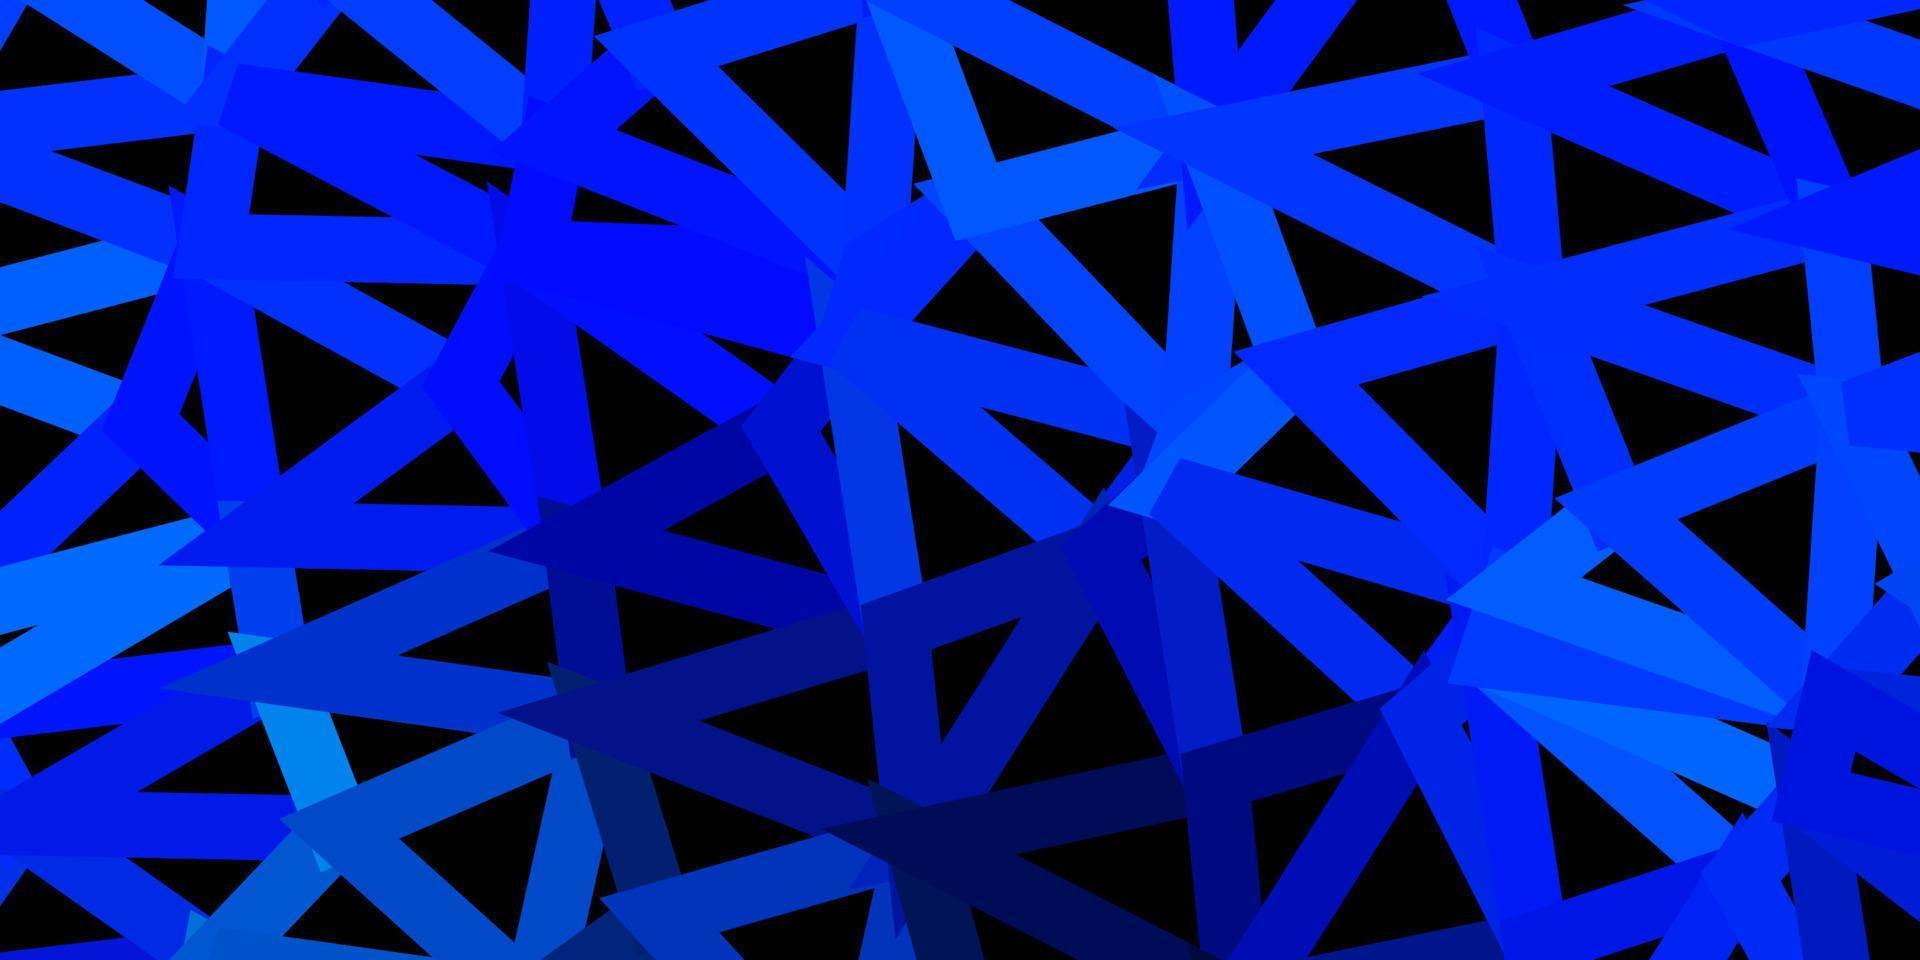 desenho poligonal geométrico de vetor azul e verde escuro.